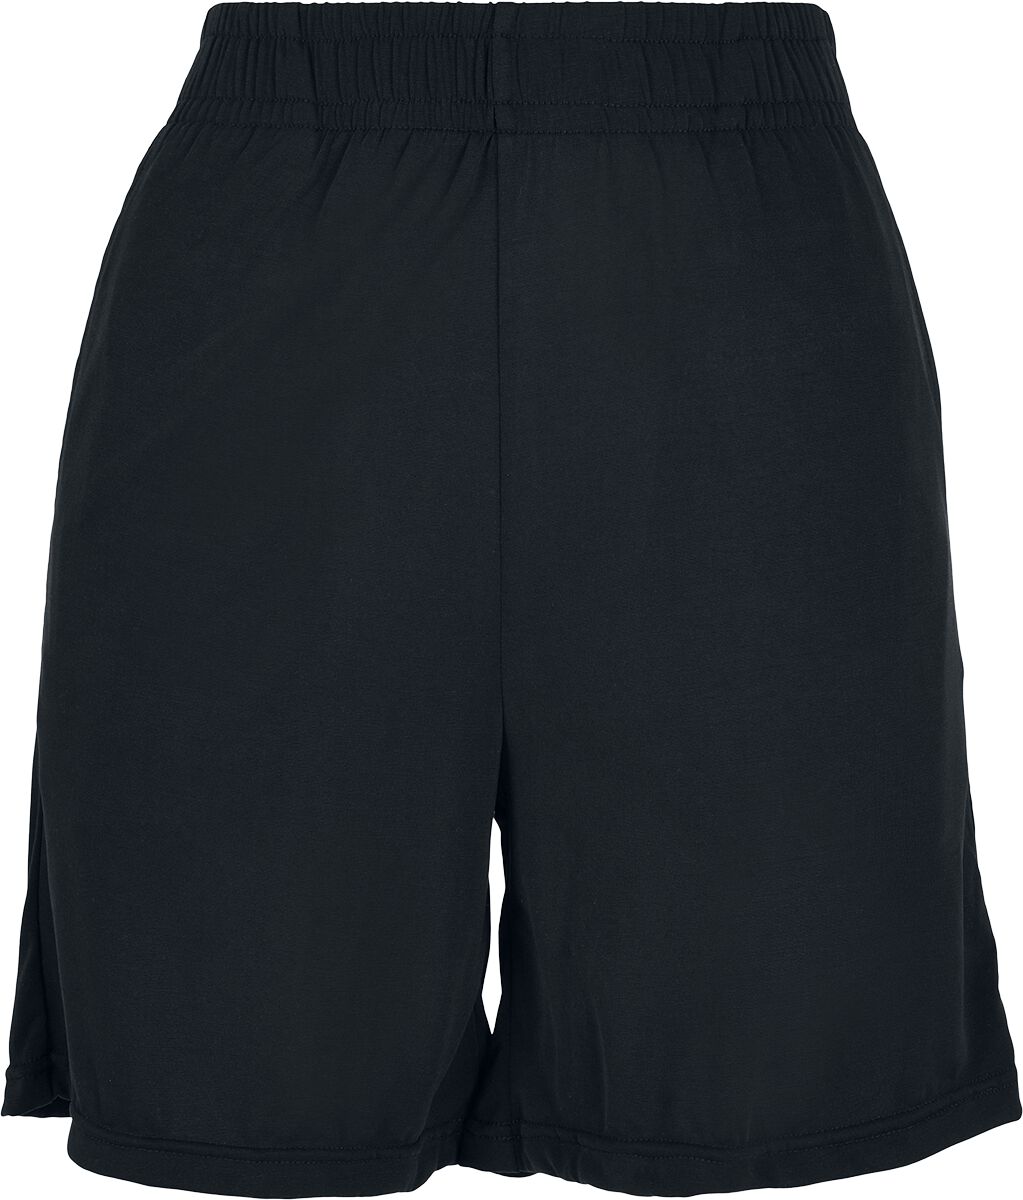 Ladies Modal Shorts Short schwarz von Urban Classics